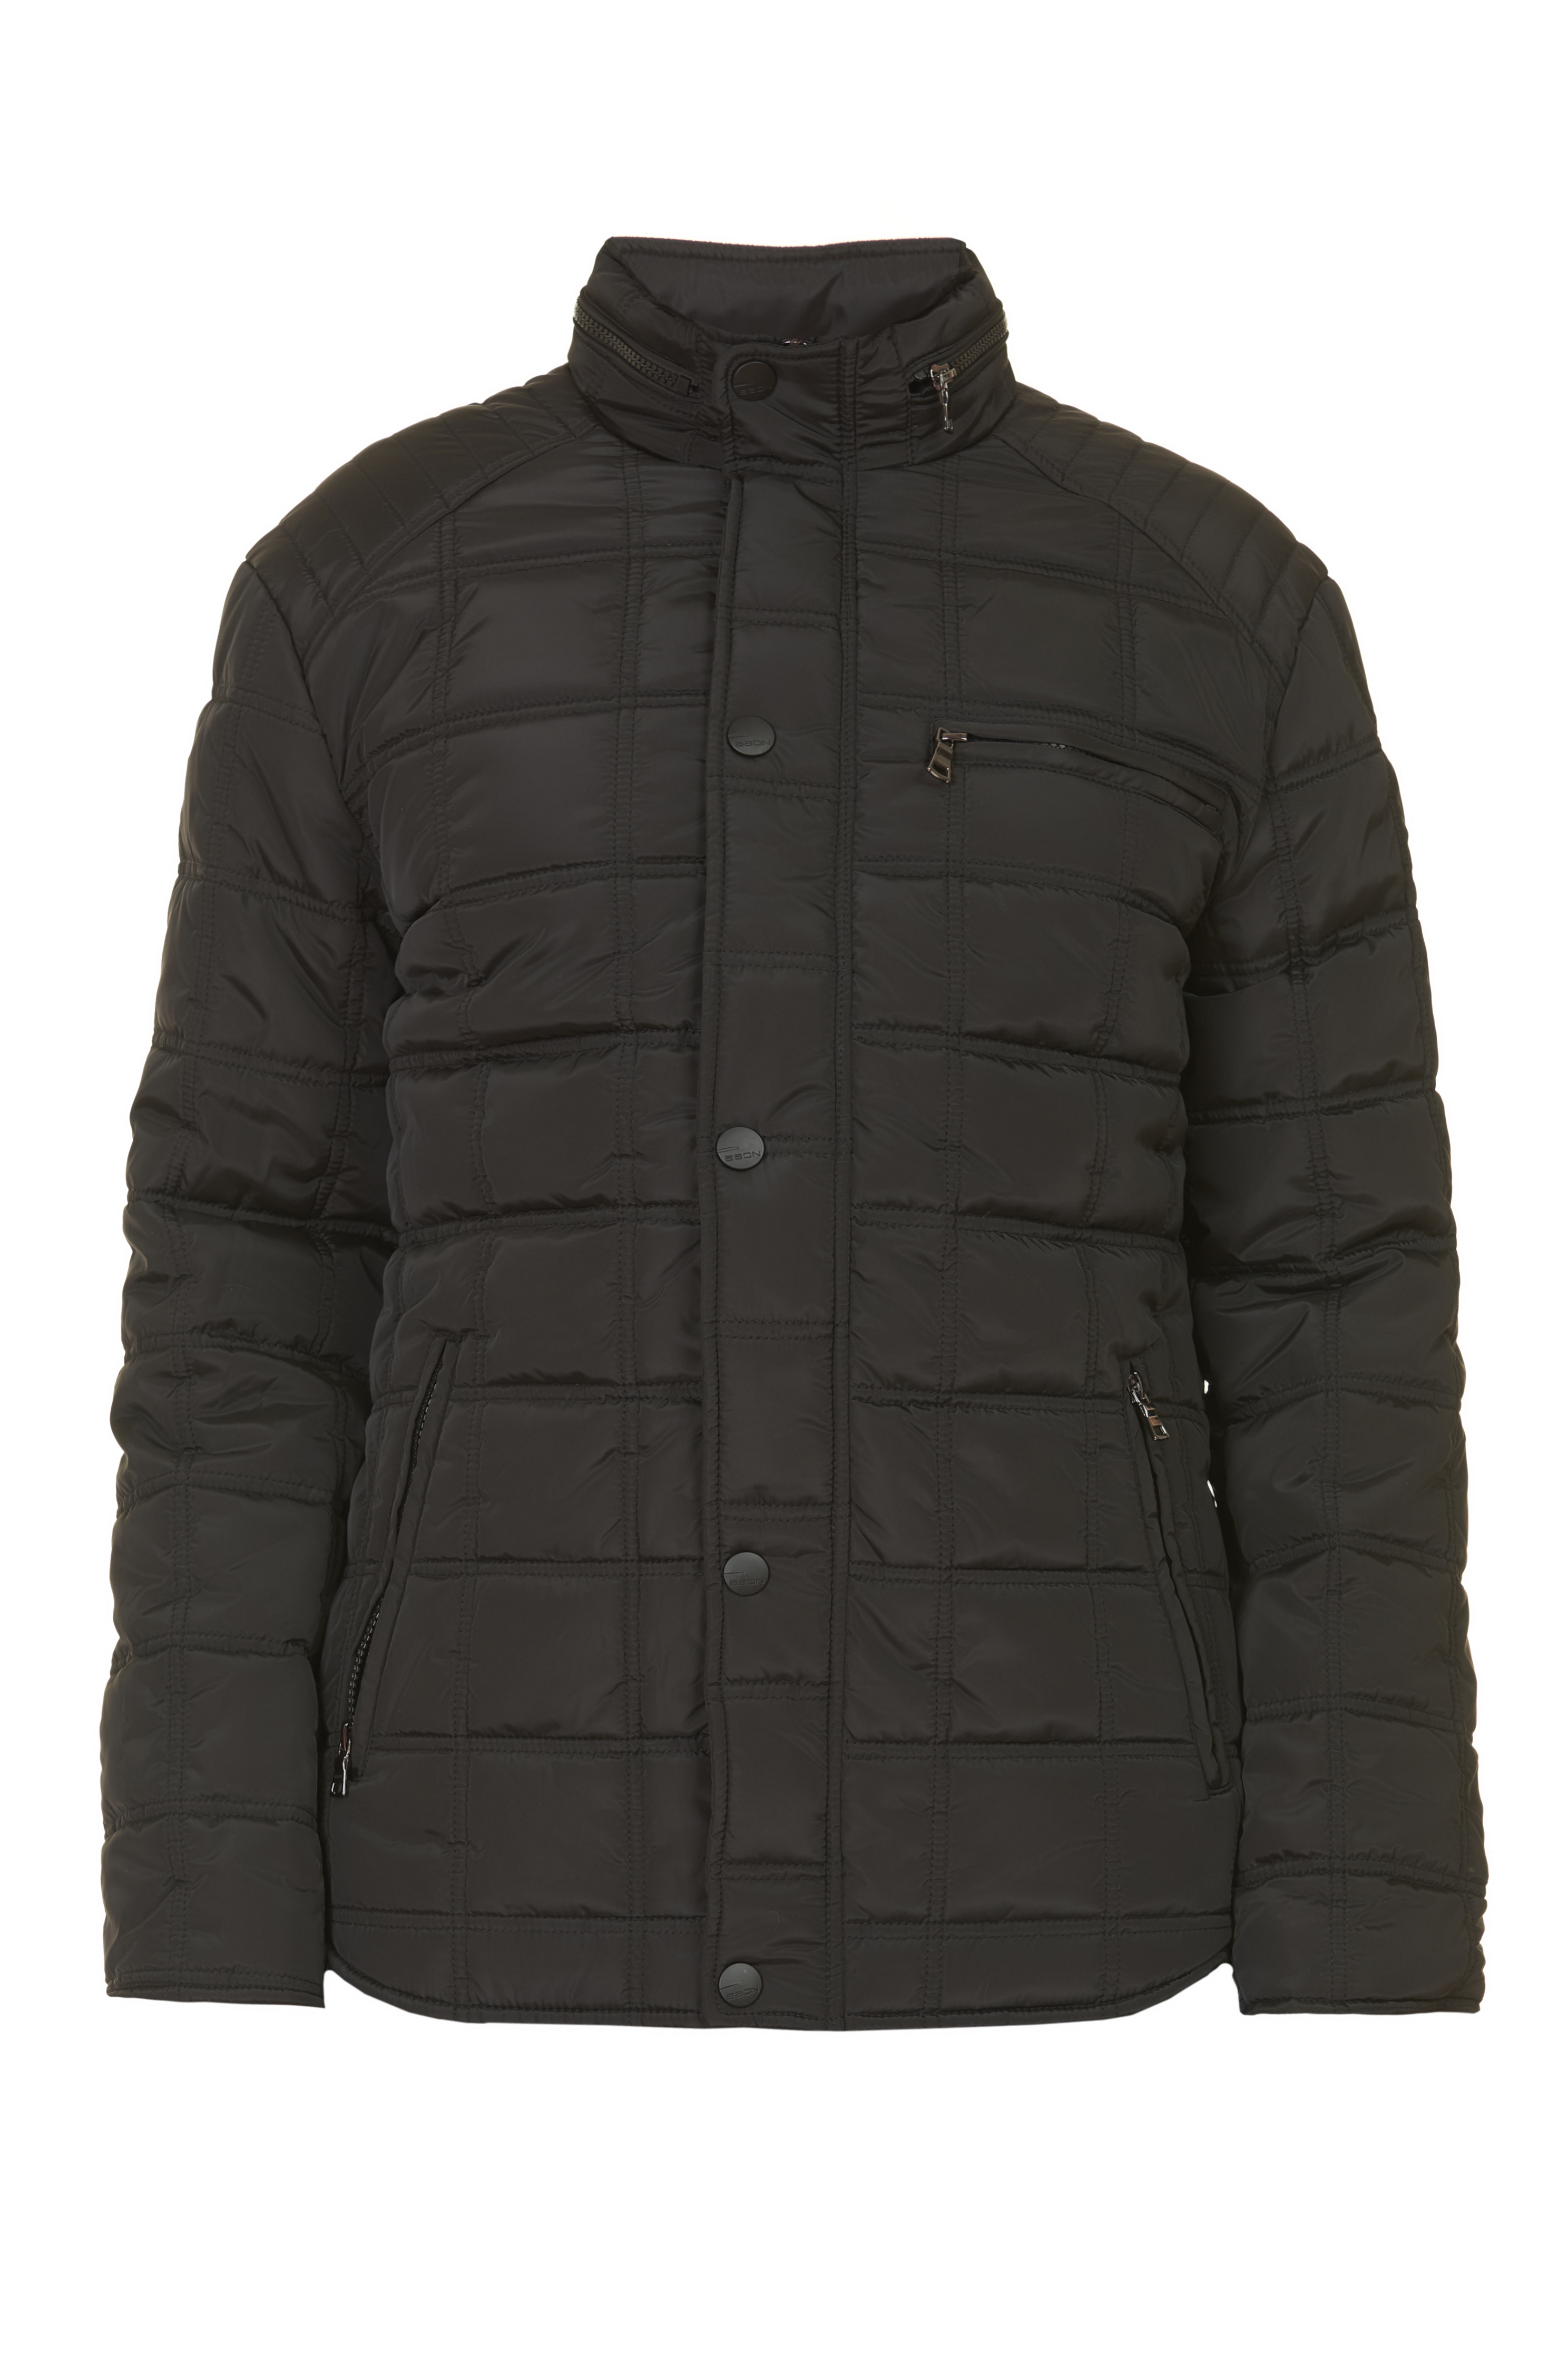 Куртка в байкерском стиле (арт. baon B537549), размер L, цвет черный Куртка в байкерском стиле (арт. baon B537549) - фото 3